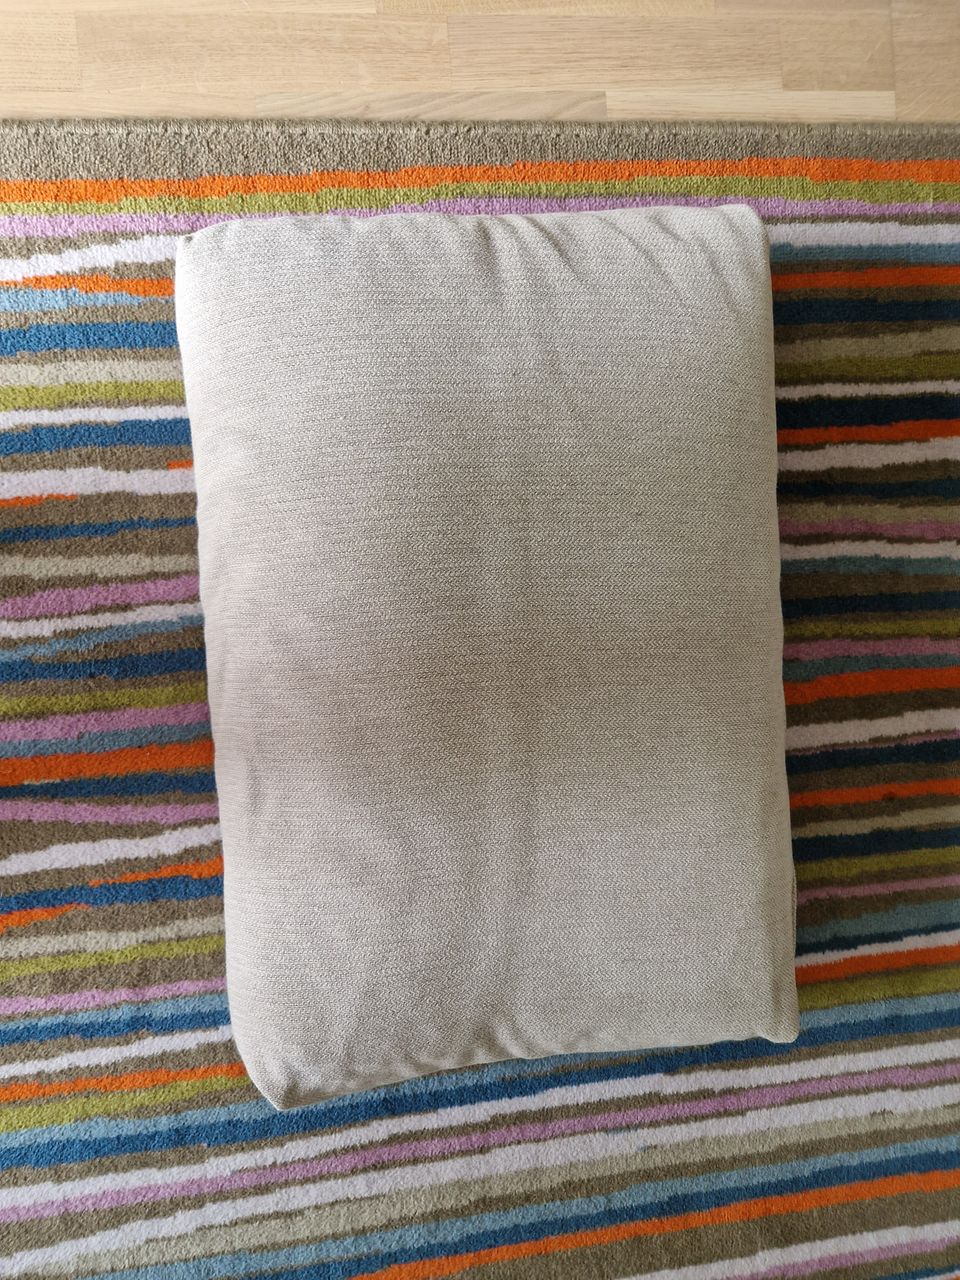 IKEA Friheten cushions